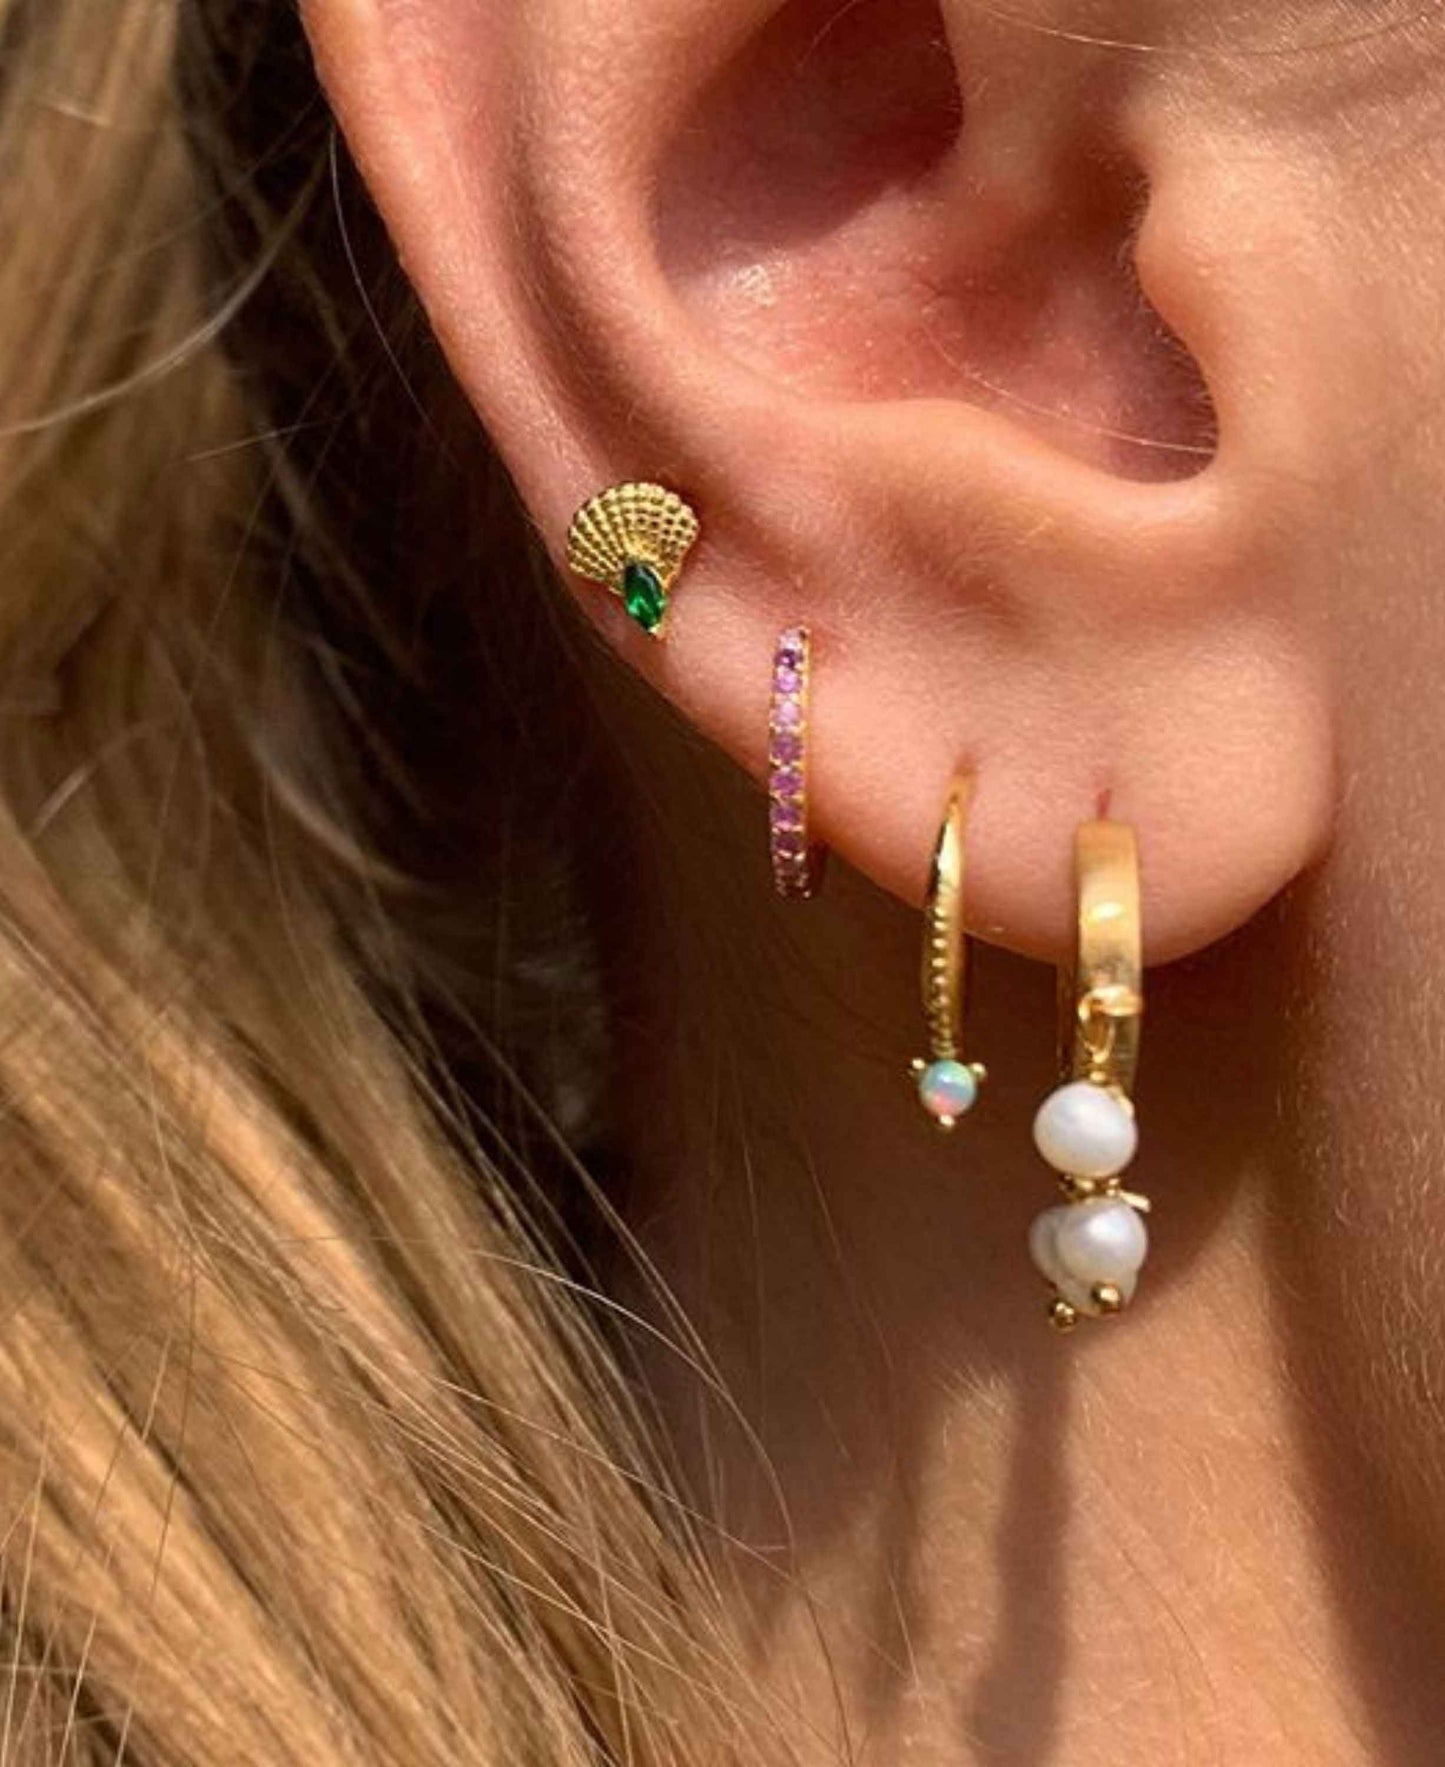 Sedna earrings